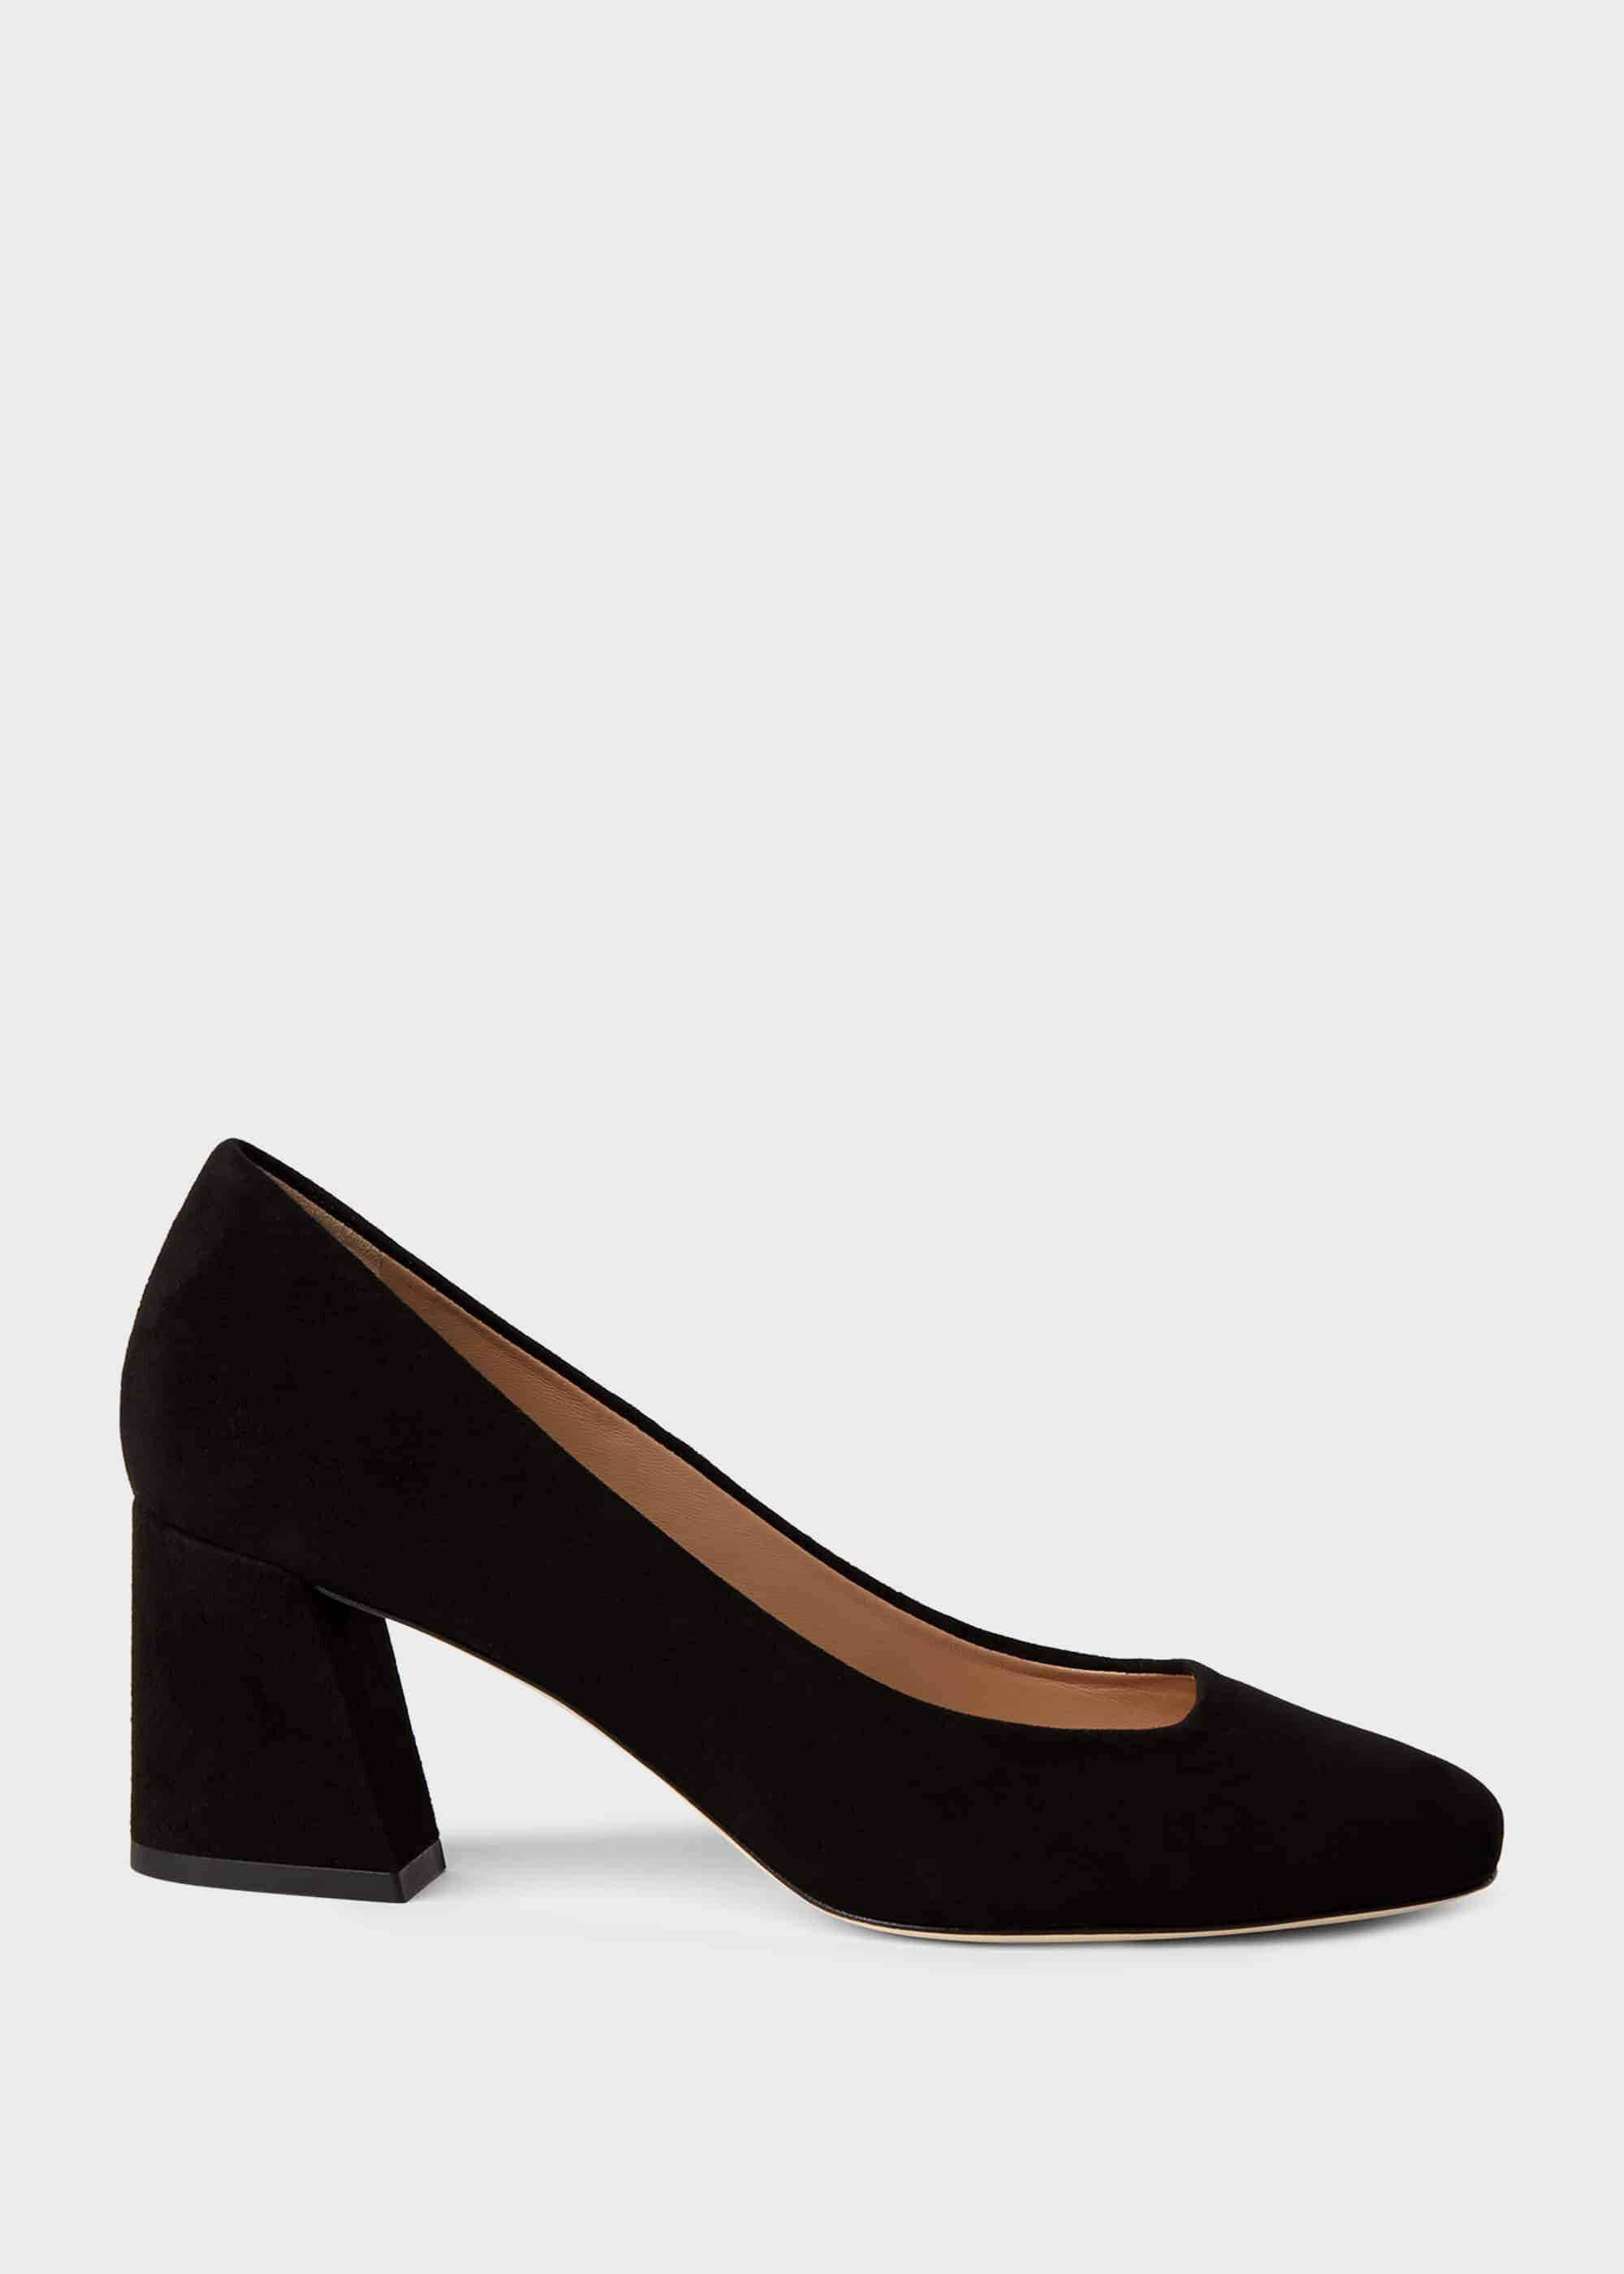 black block heel court shoe